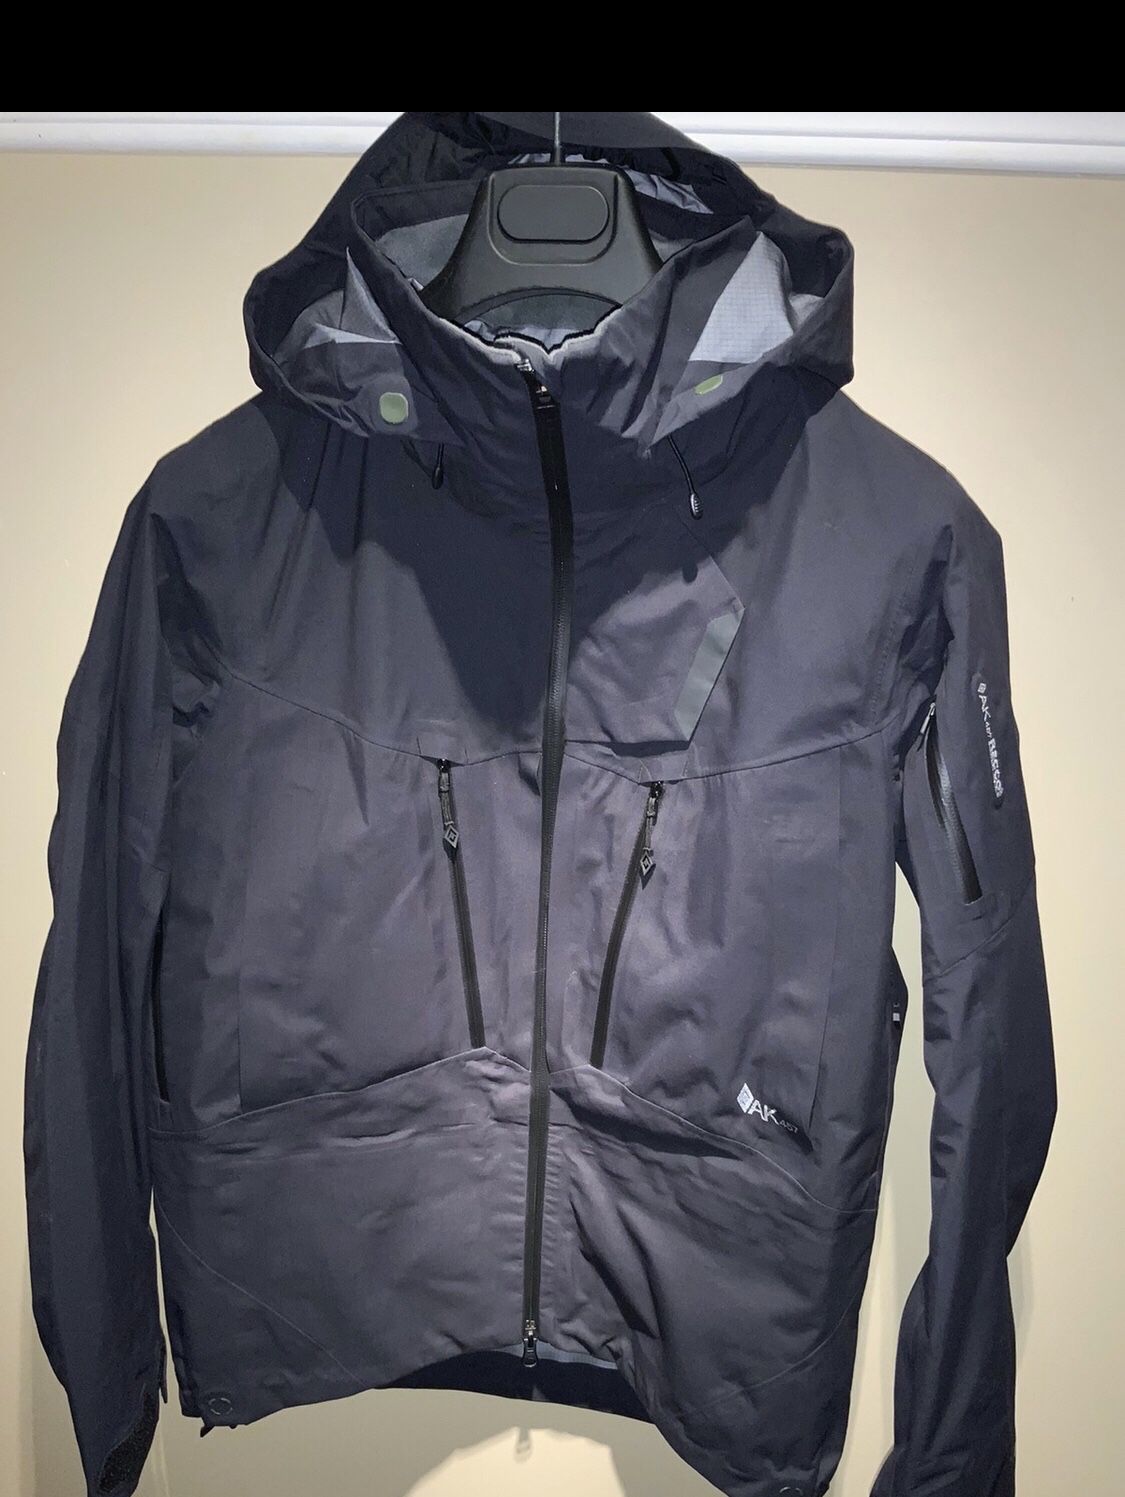 Burton [ak] Ak457 Japan GORE-TEX PRO Guide Jacket size Small